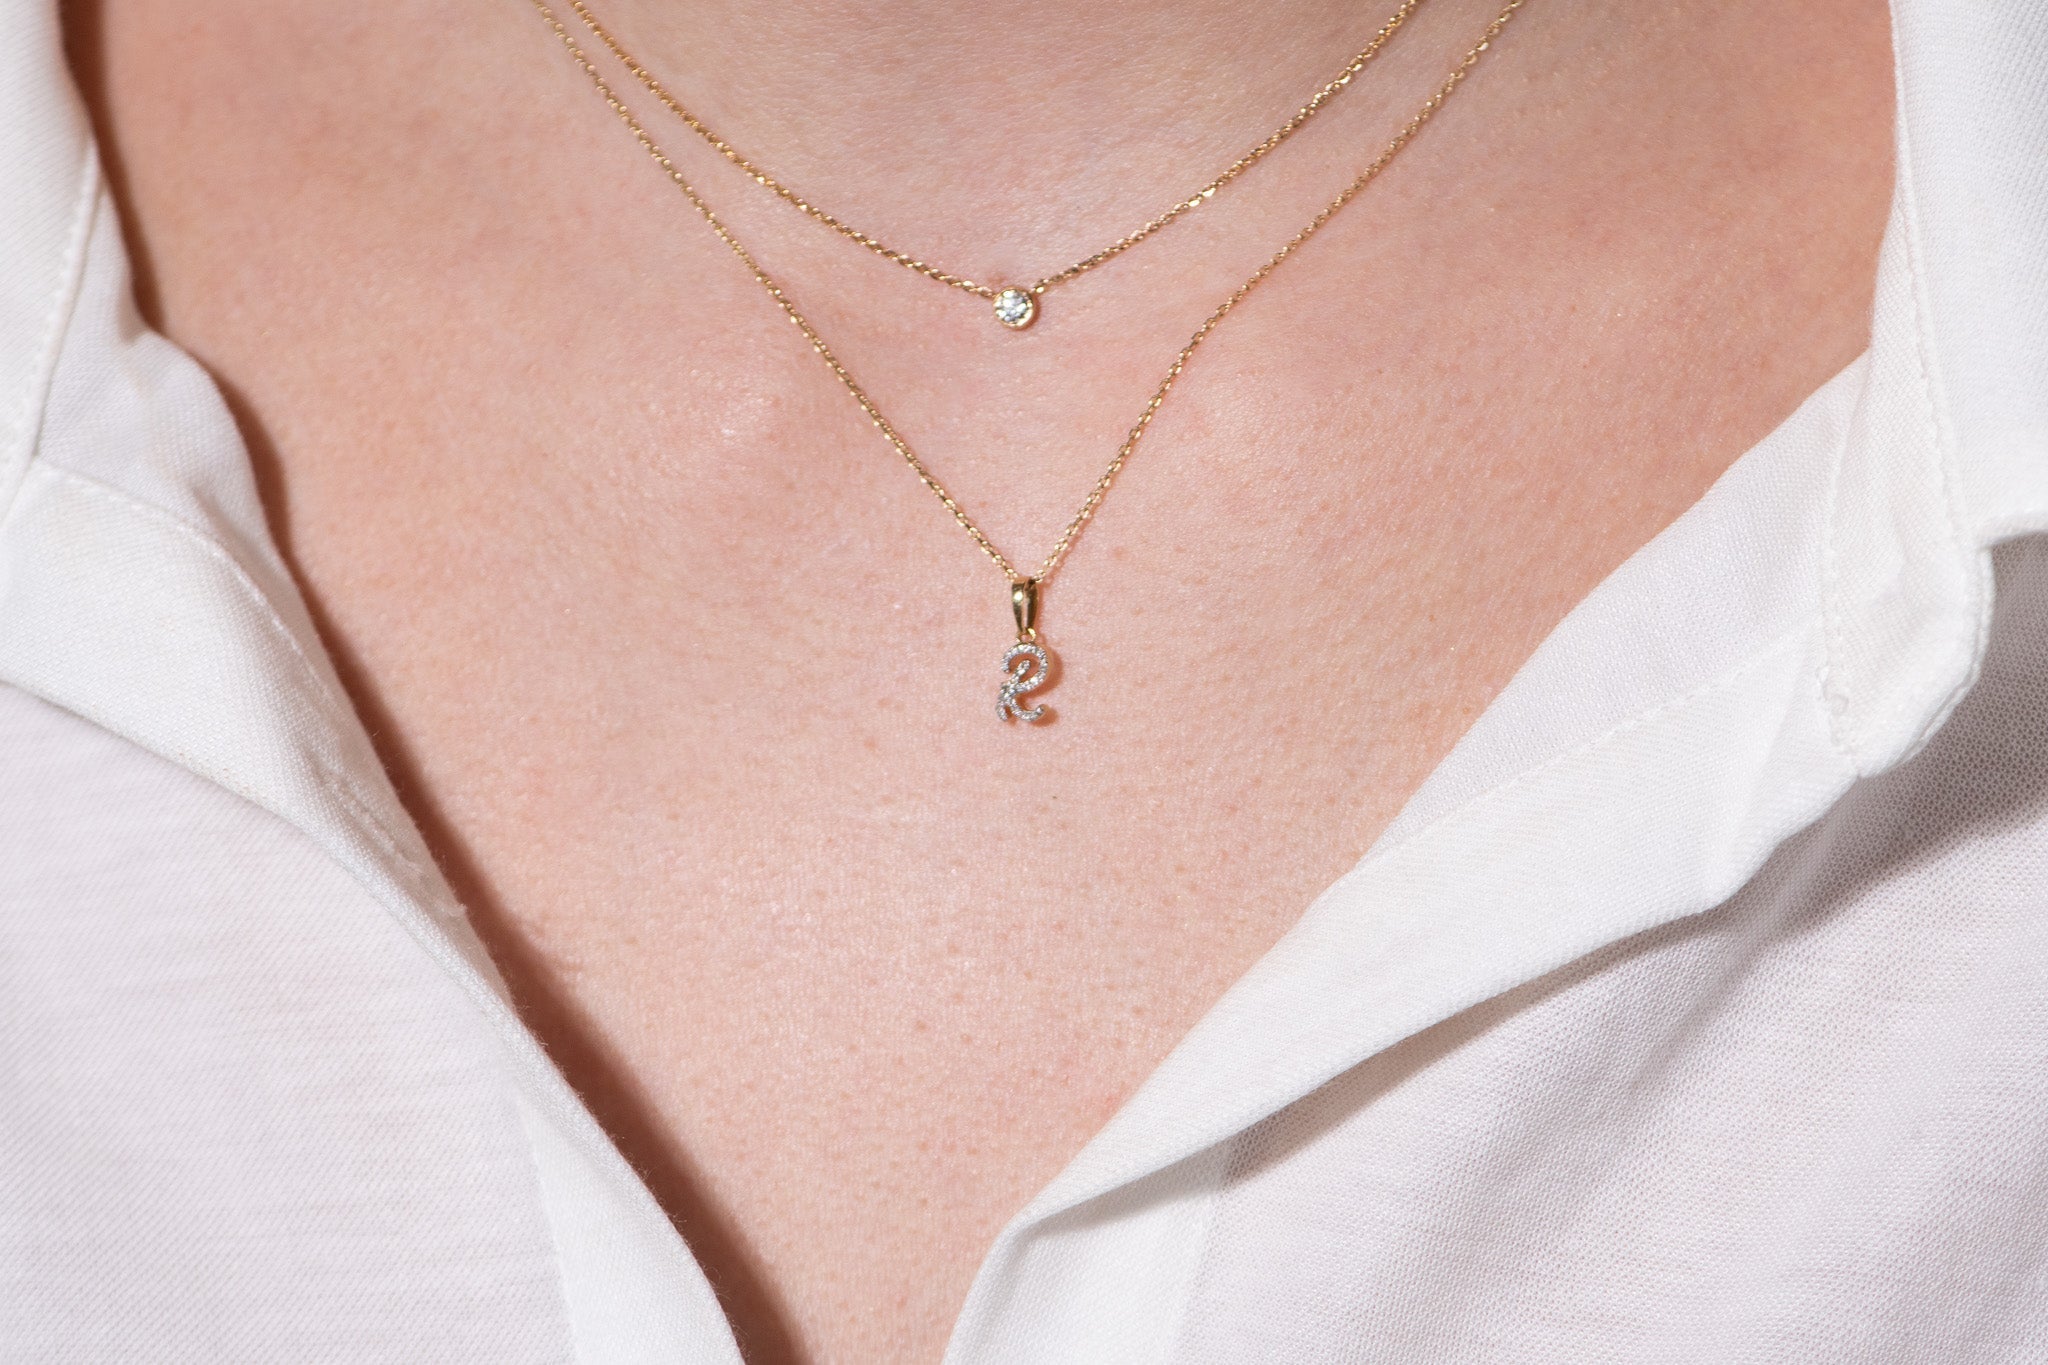 Cursive Diamond Initial Necklace - R Necklaces Estella Collection #product_description# 18557 14k Diamond Gemstone #tag4# #tag5# #tag6# #tag7# #tag8# #tag9# #tag10# 14k Yellow Gold